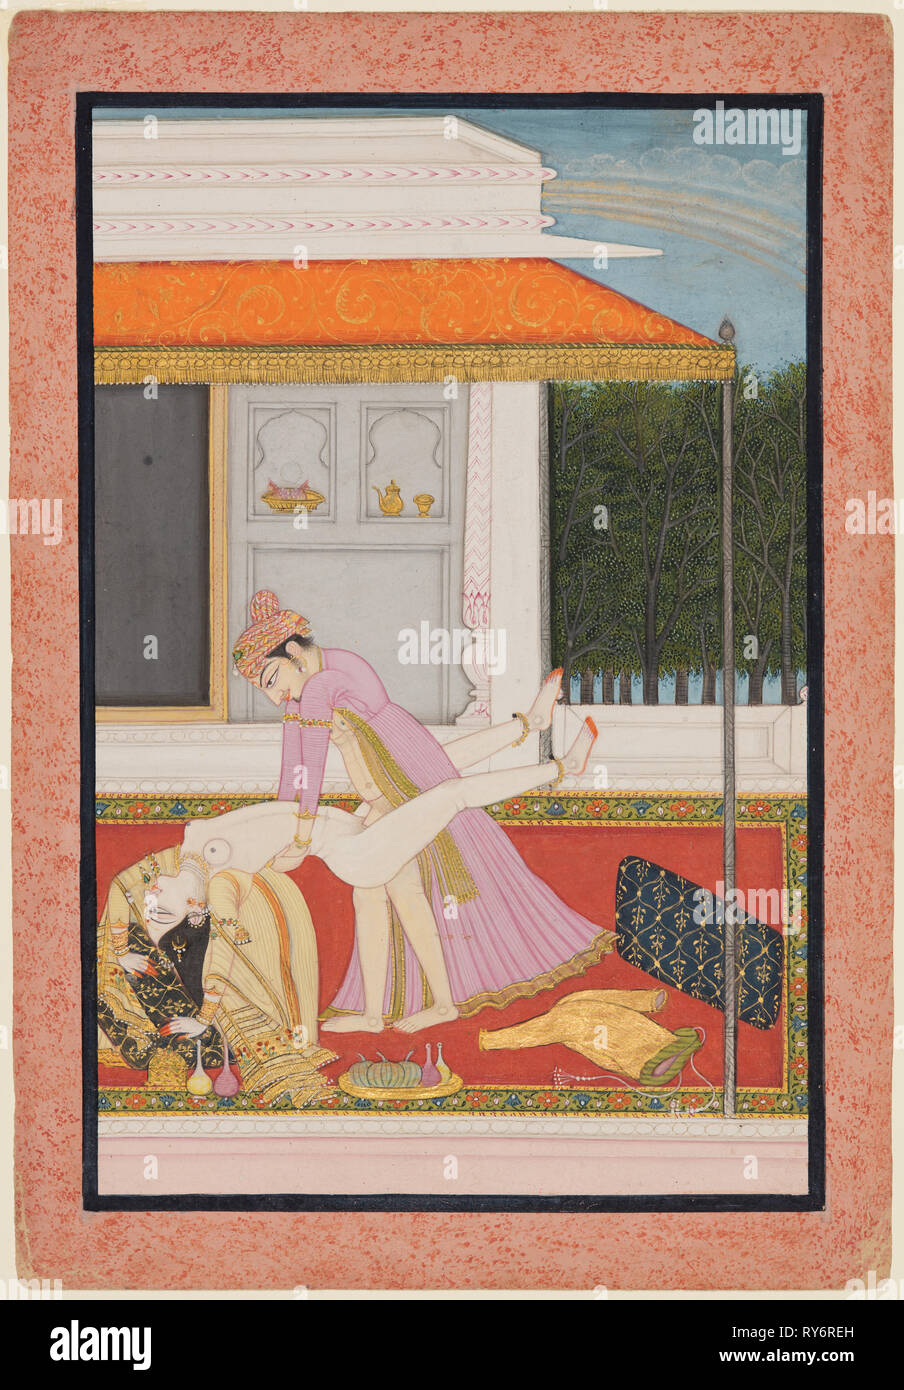 Un couple amoureux, probablement Raja Mahendra Pal de Basohli (r. 1806- 1813) avec un favori Rani, ch. 1810. L'Inde, Basohli. Couleur sur papier ; miniature : 18.4 x 12.1 cm (7 1/4 x 4 3/4 in.) ; page : 21,9 x 15,3 cm (8 5/8 x 6 in Banque D'Images